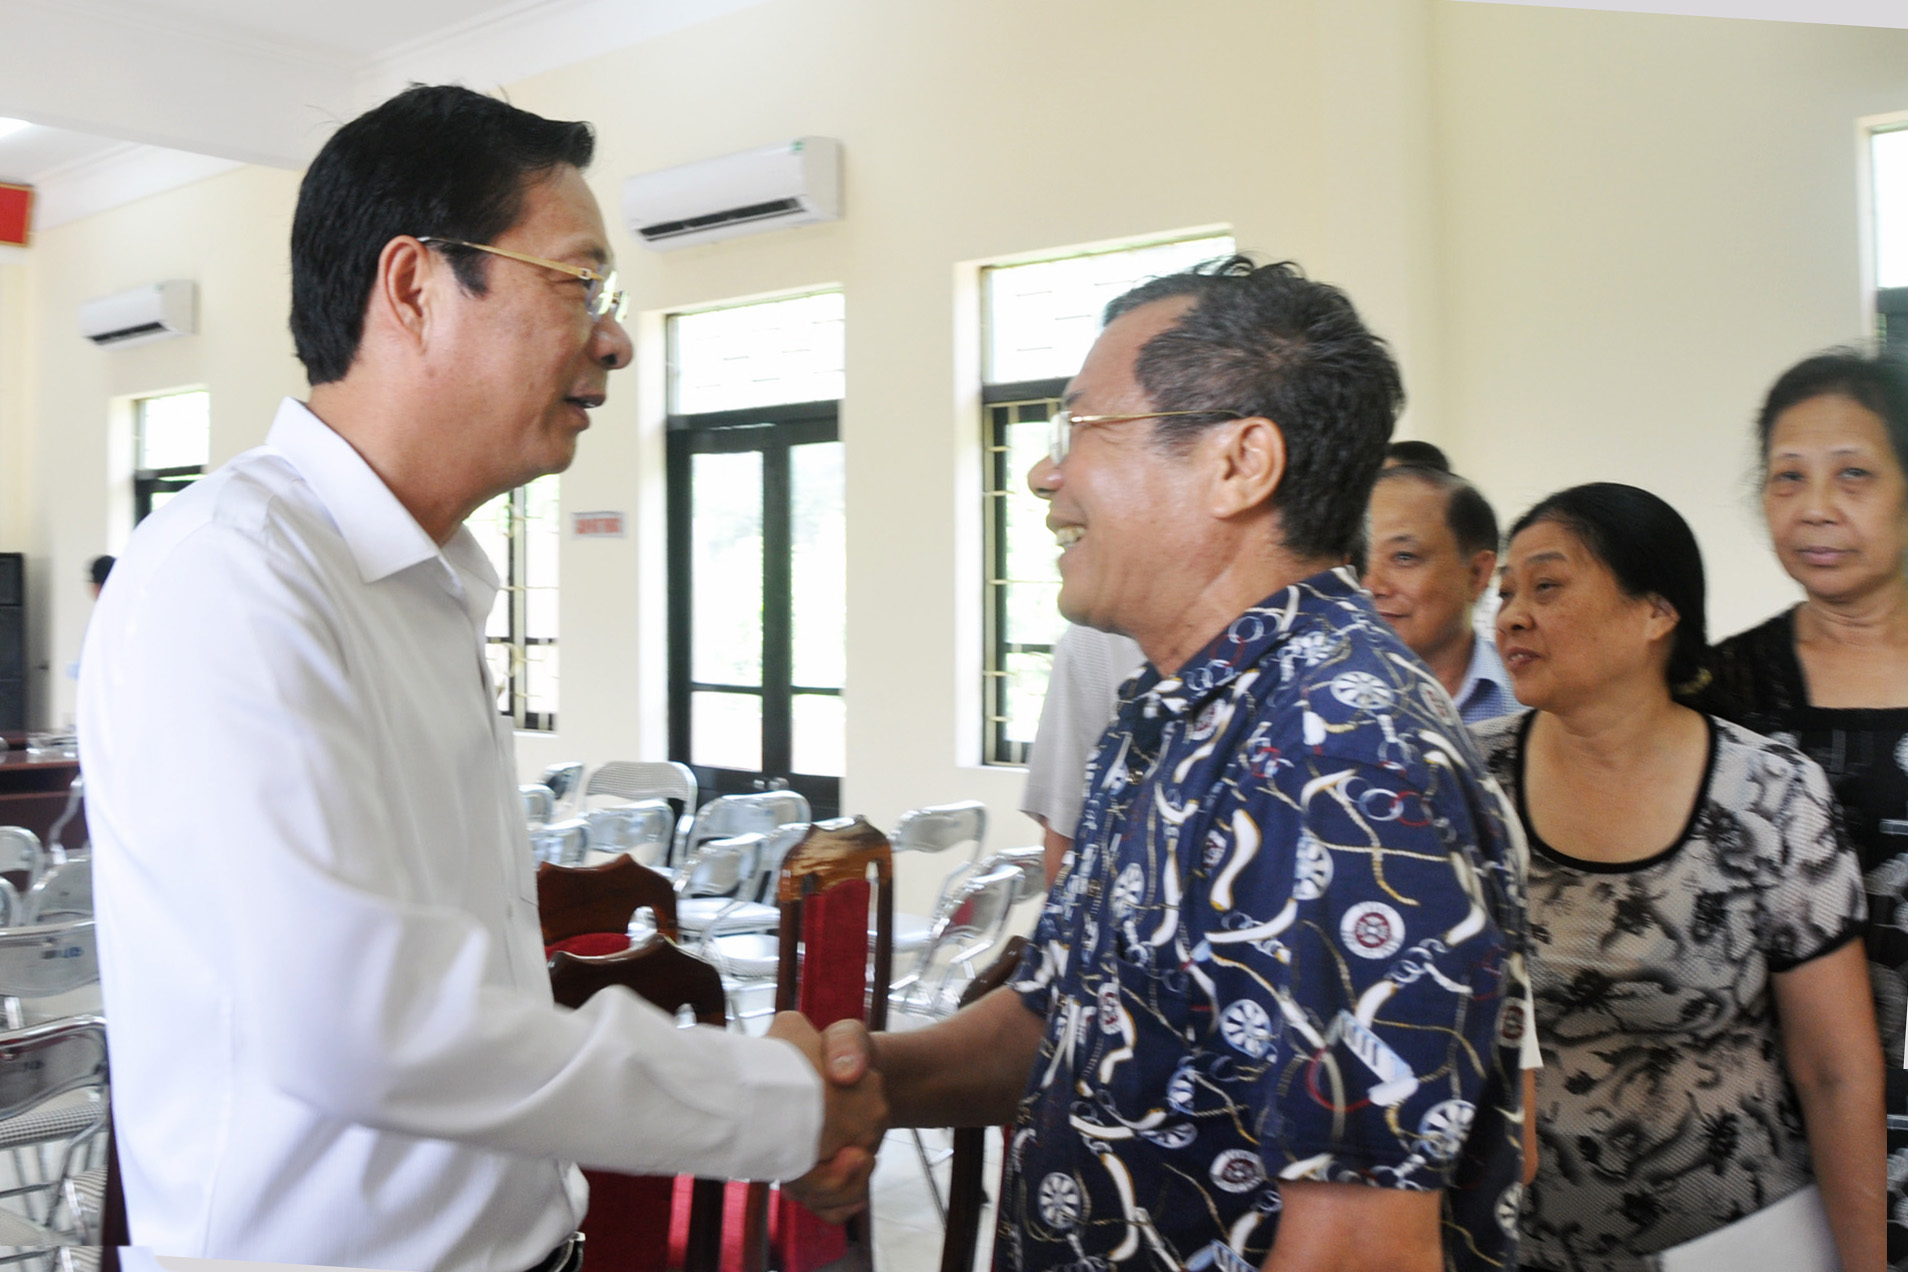 Đồng chí Nguyễn Văn Đọc, Bí thư Tỉnh ủy, Chủ tịch HĐND tỉnh trò chuyện với cử tri sau buổi tiếp xúc.